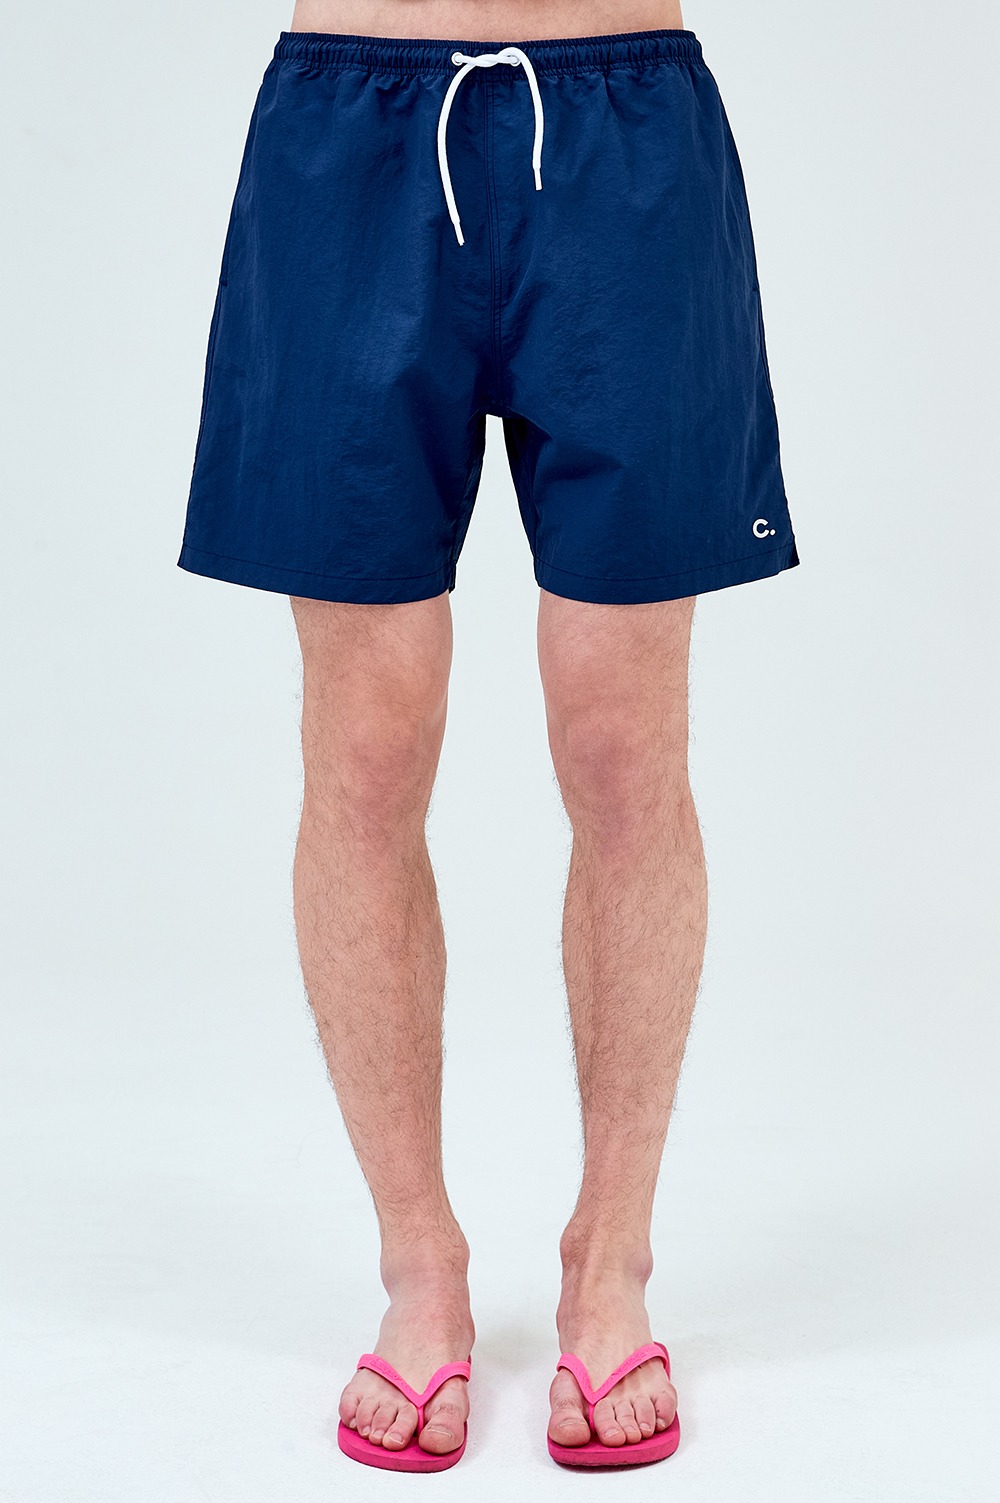 clove - [23SS clove] Summer Shorts_Men (Navy)